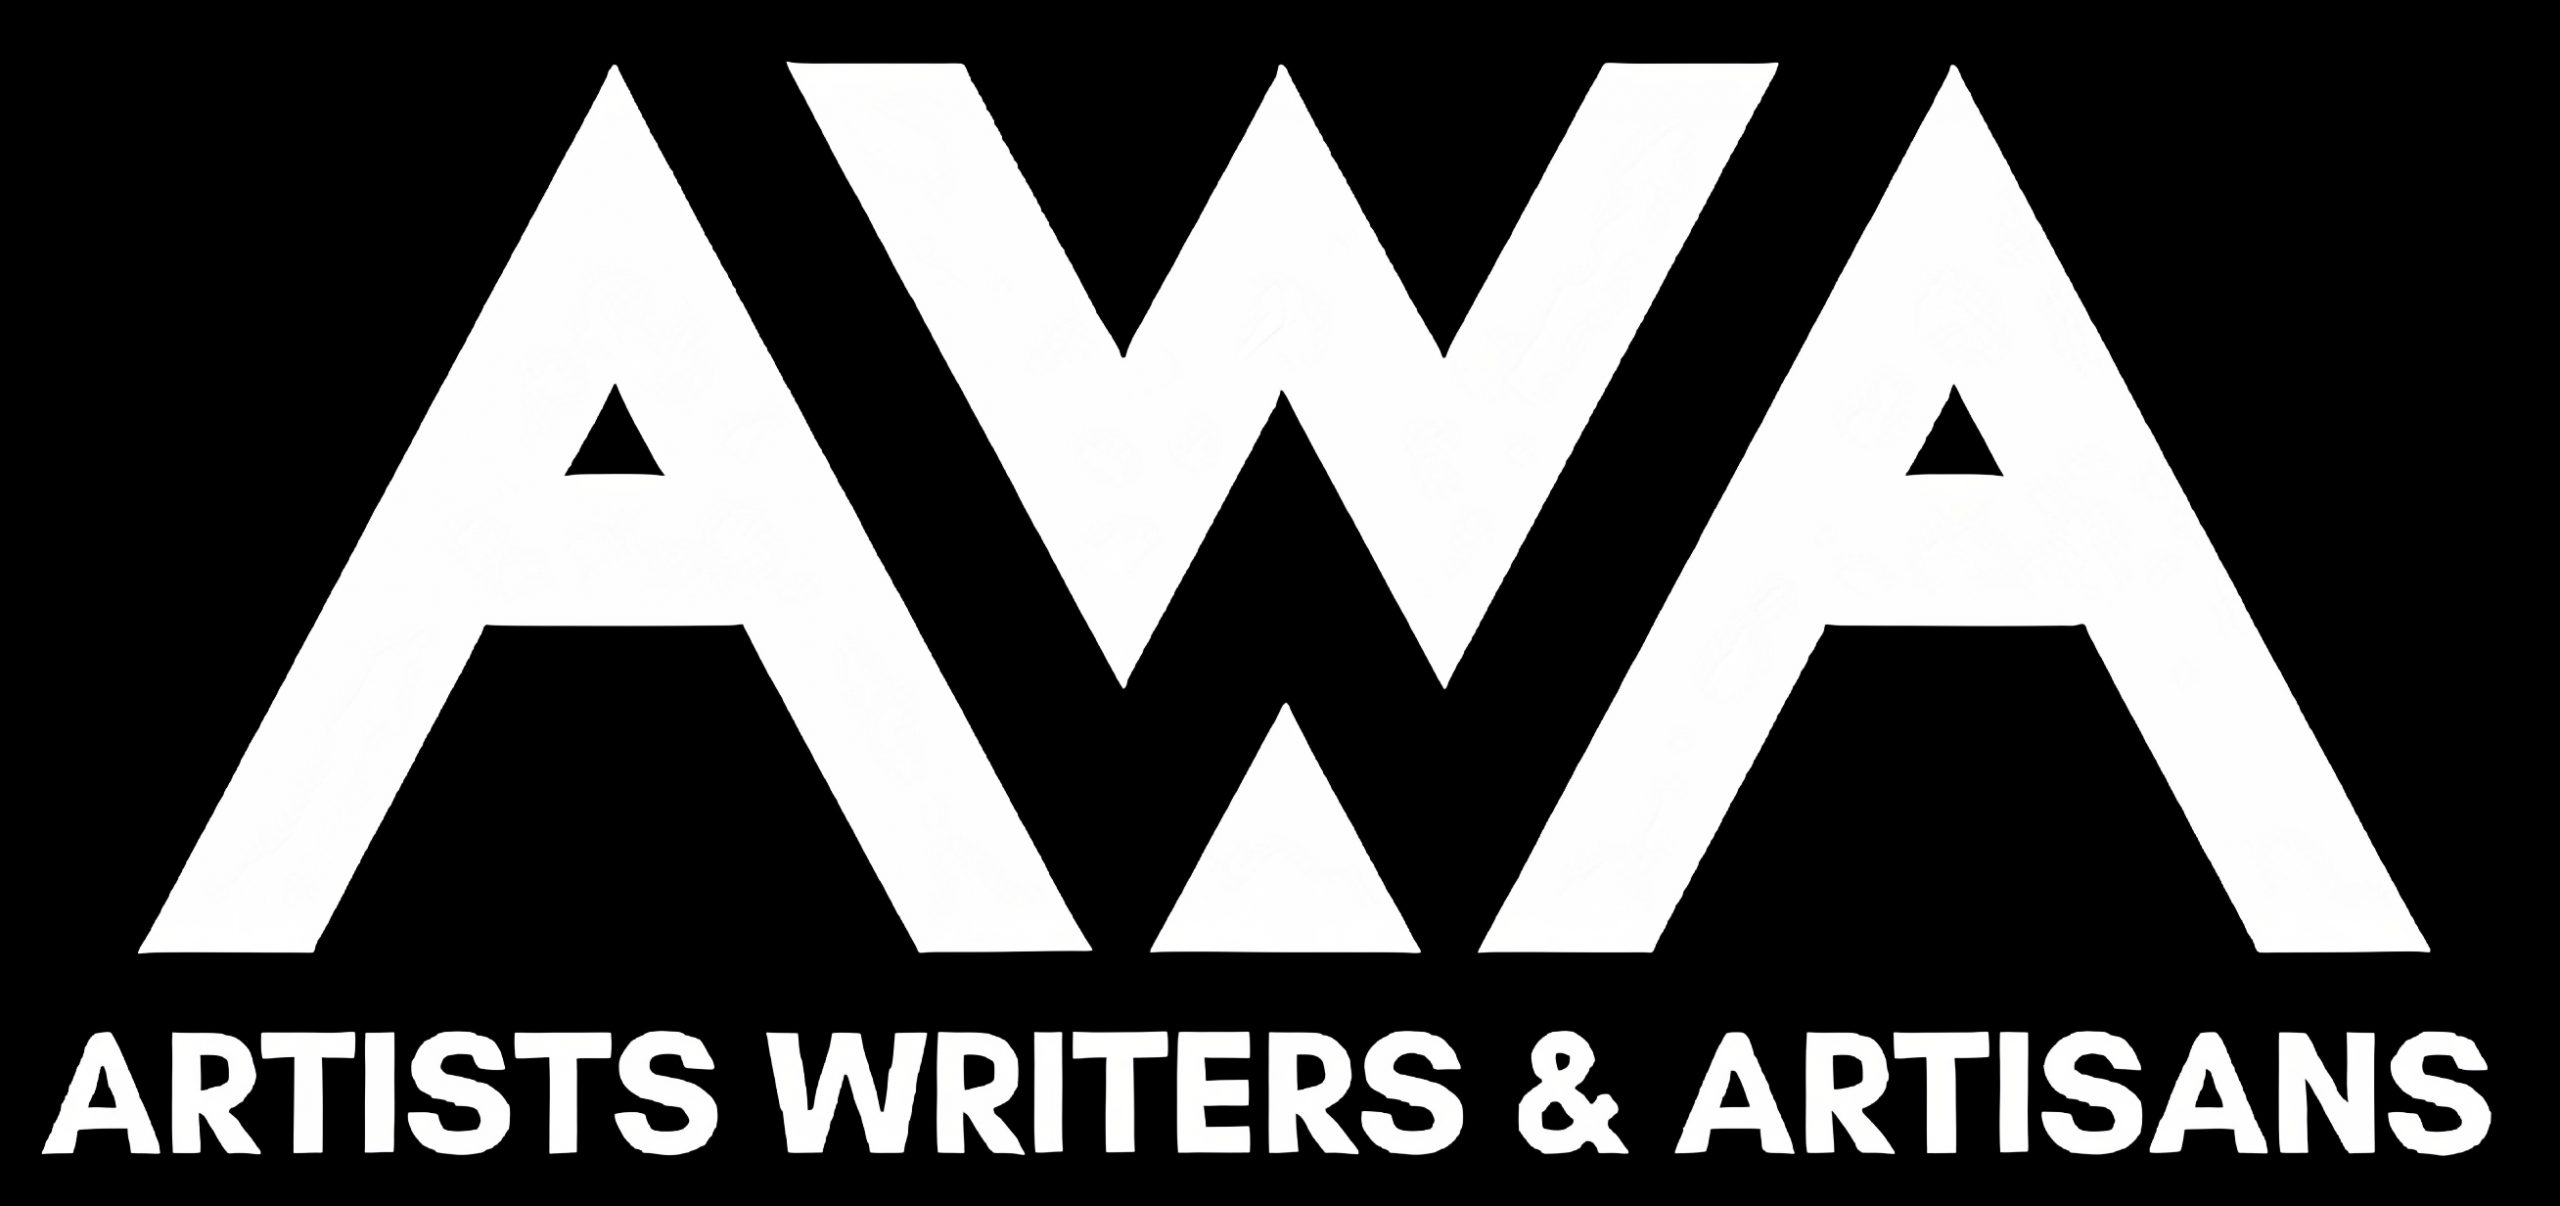 AWA Studios